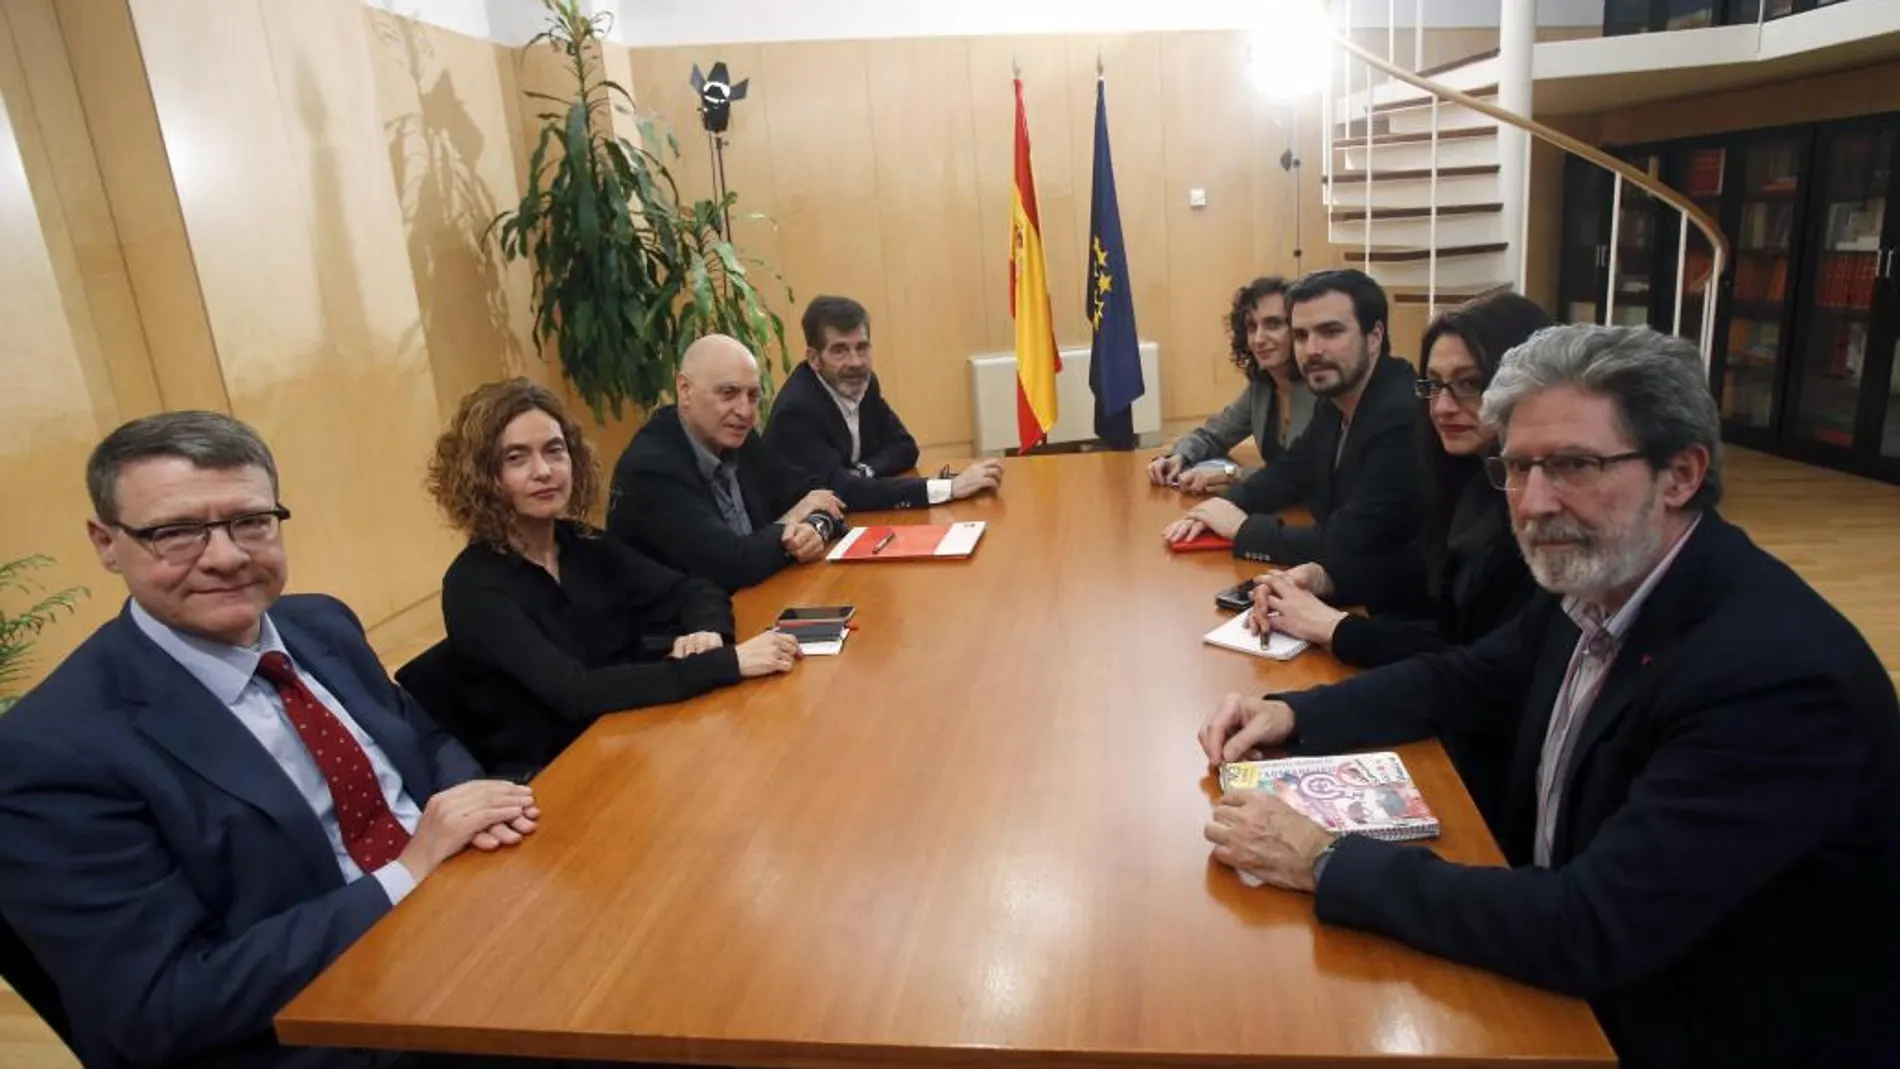 Los miembros de la comisión negociadora del PSOE Jordi Sevilla (i), Meritxell Batet (2i), Rodolfo Ares (3i) y José Enrique Serrano (4i), y de IU, Adoldo Barrena (d), Sol Sánchez (2d), Alberto Garzón (3d), e Isabel Elbal (4d).